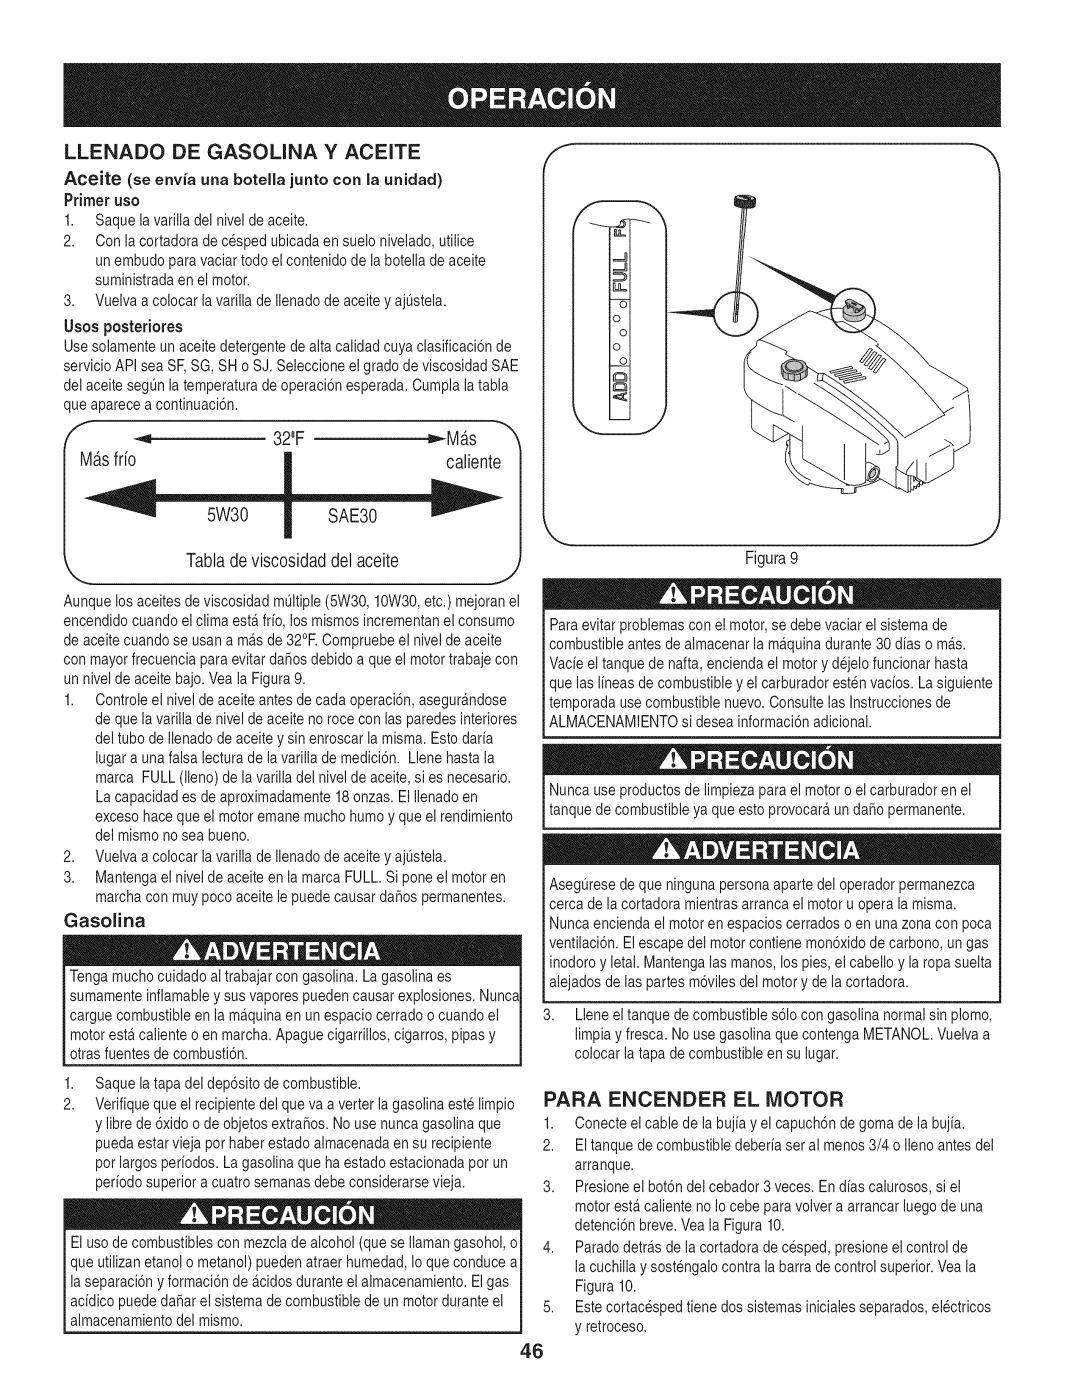 Craftsman 247.887210 manual Llenado De Gasolina Y Aceite, Para Encender El Motor 